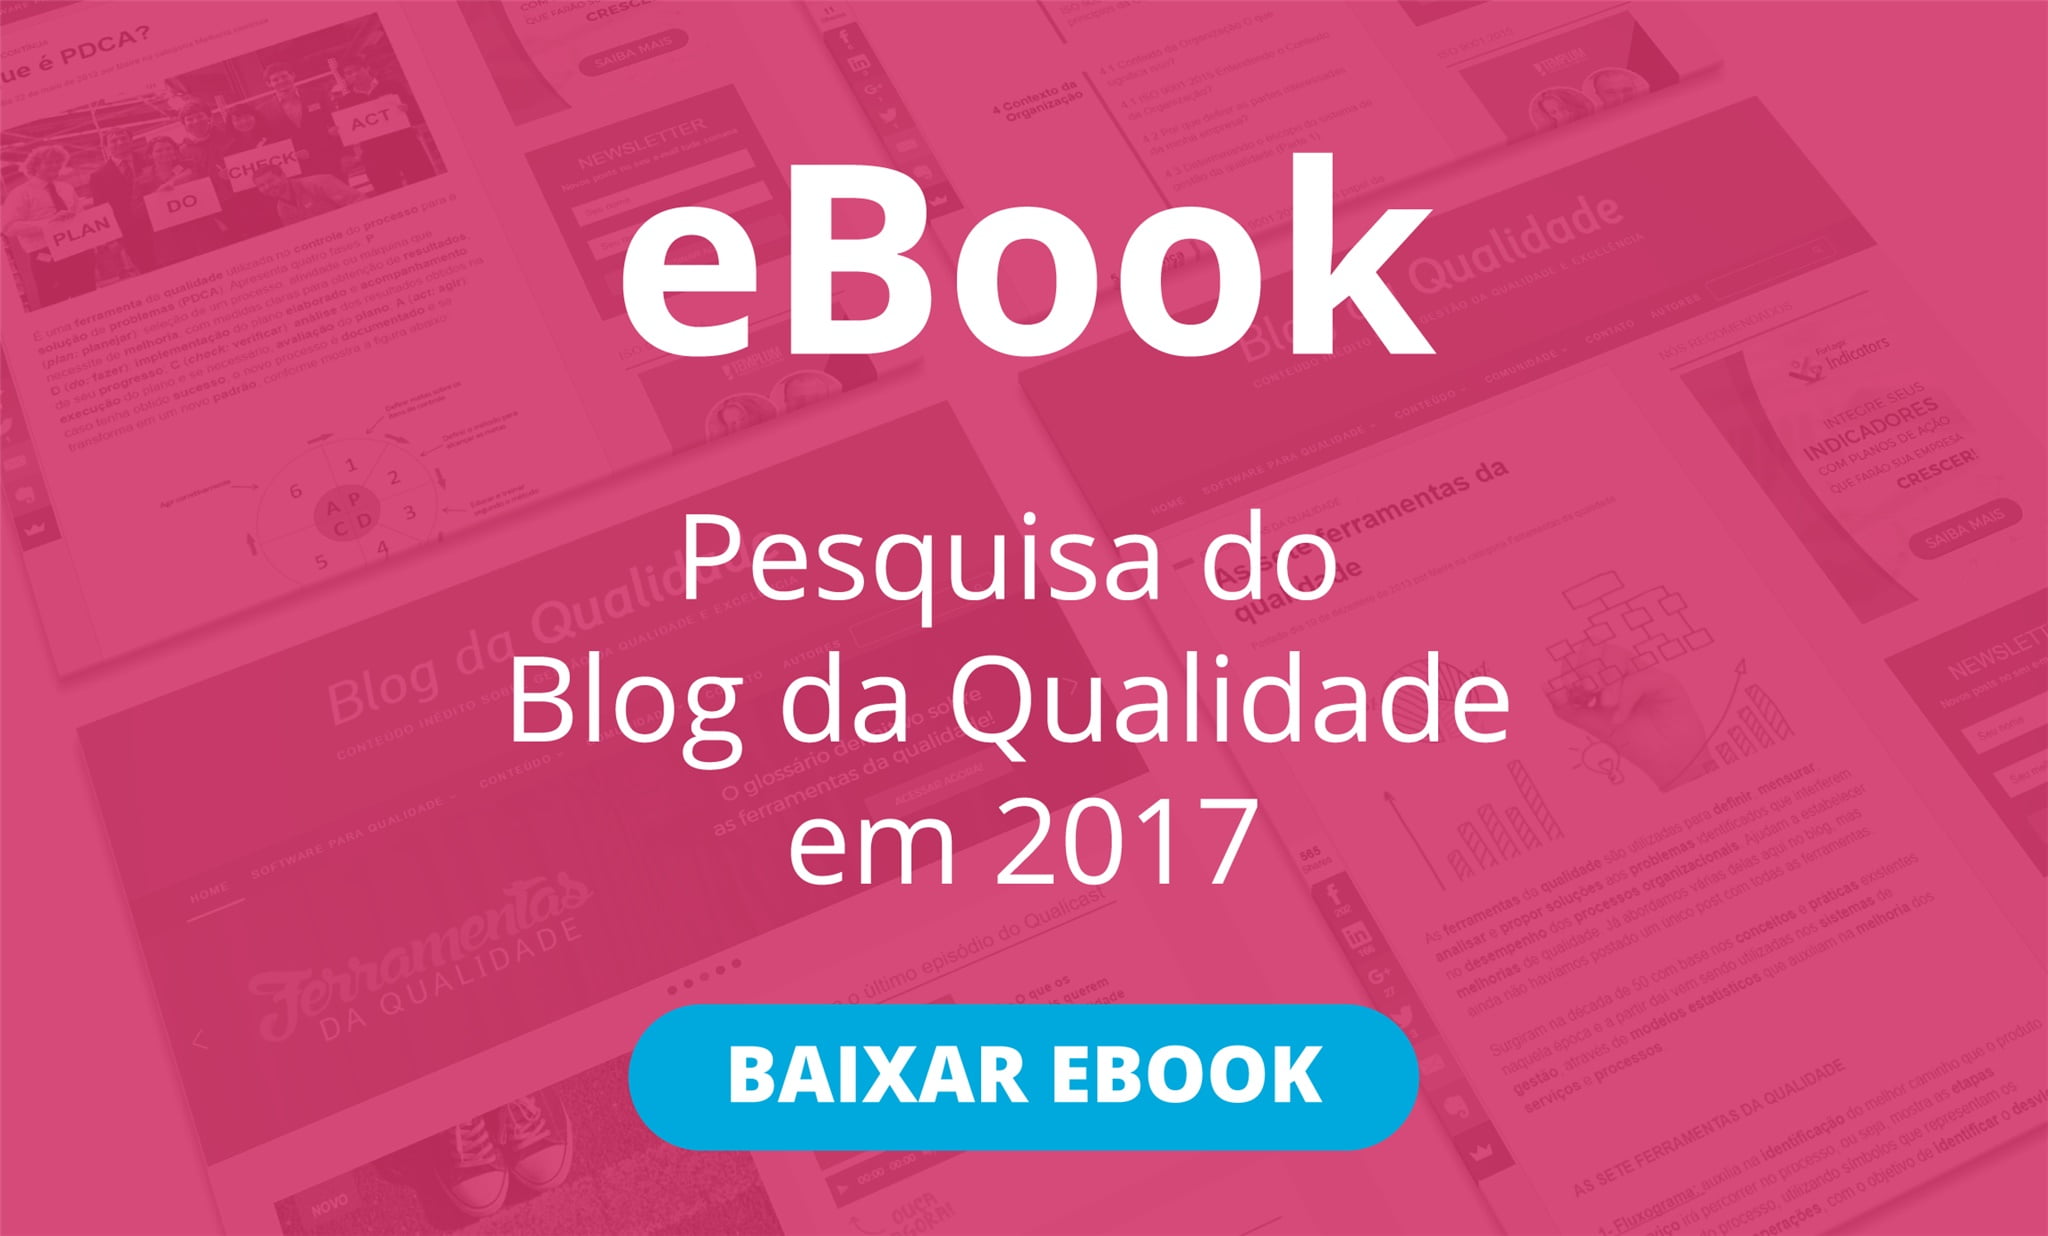 Ebook-pesquisa-blog-da-qualidade